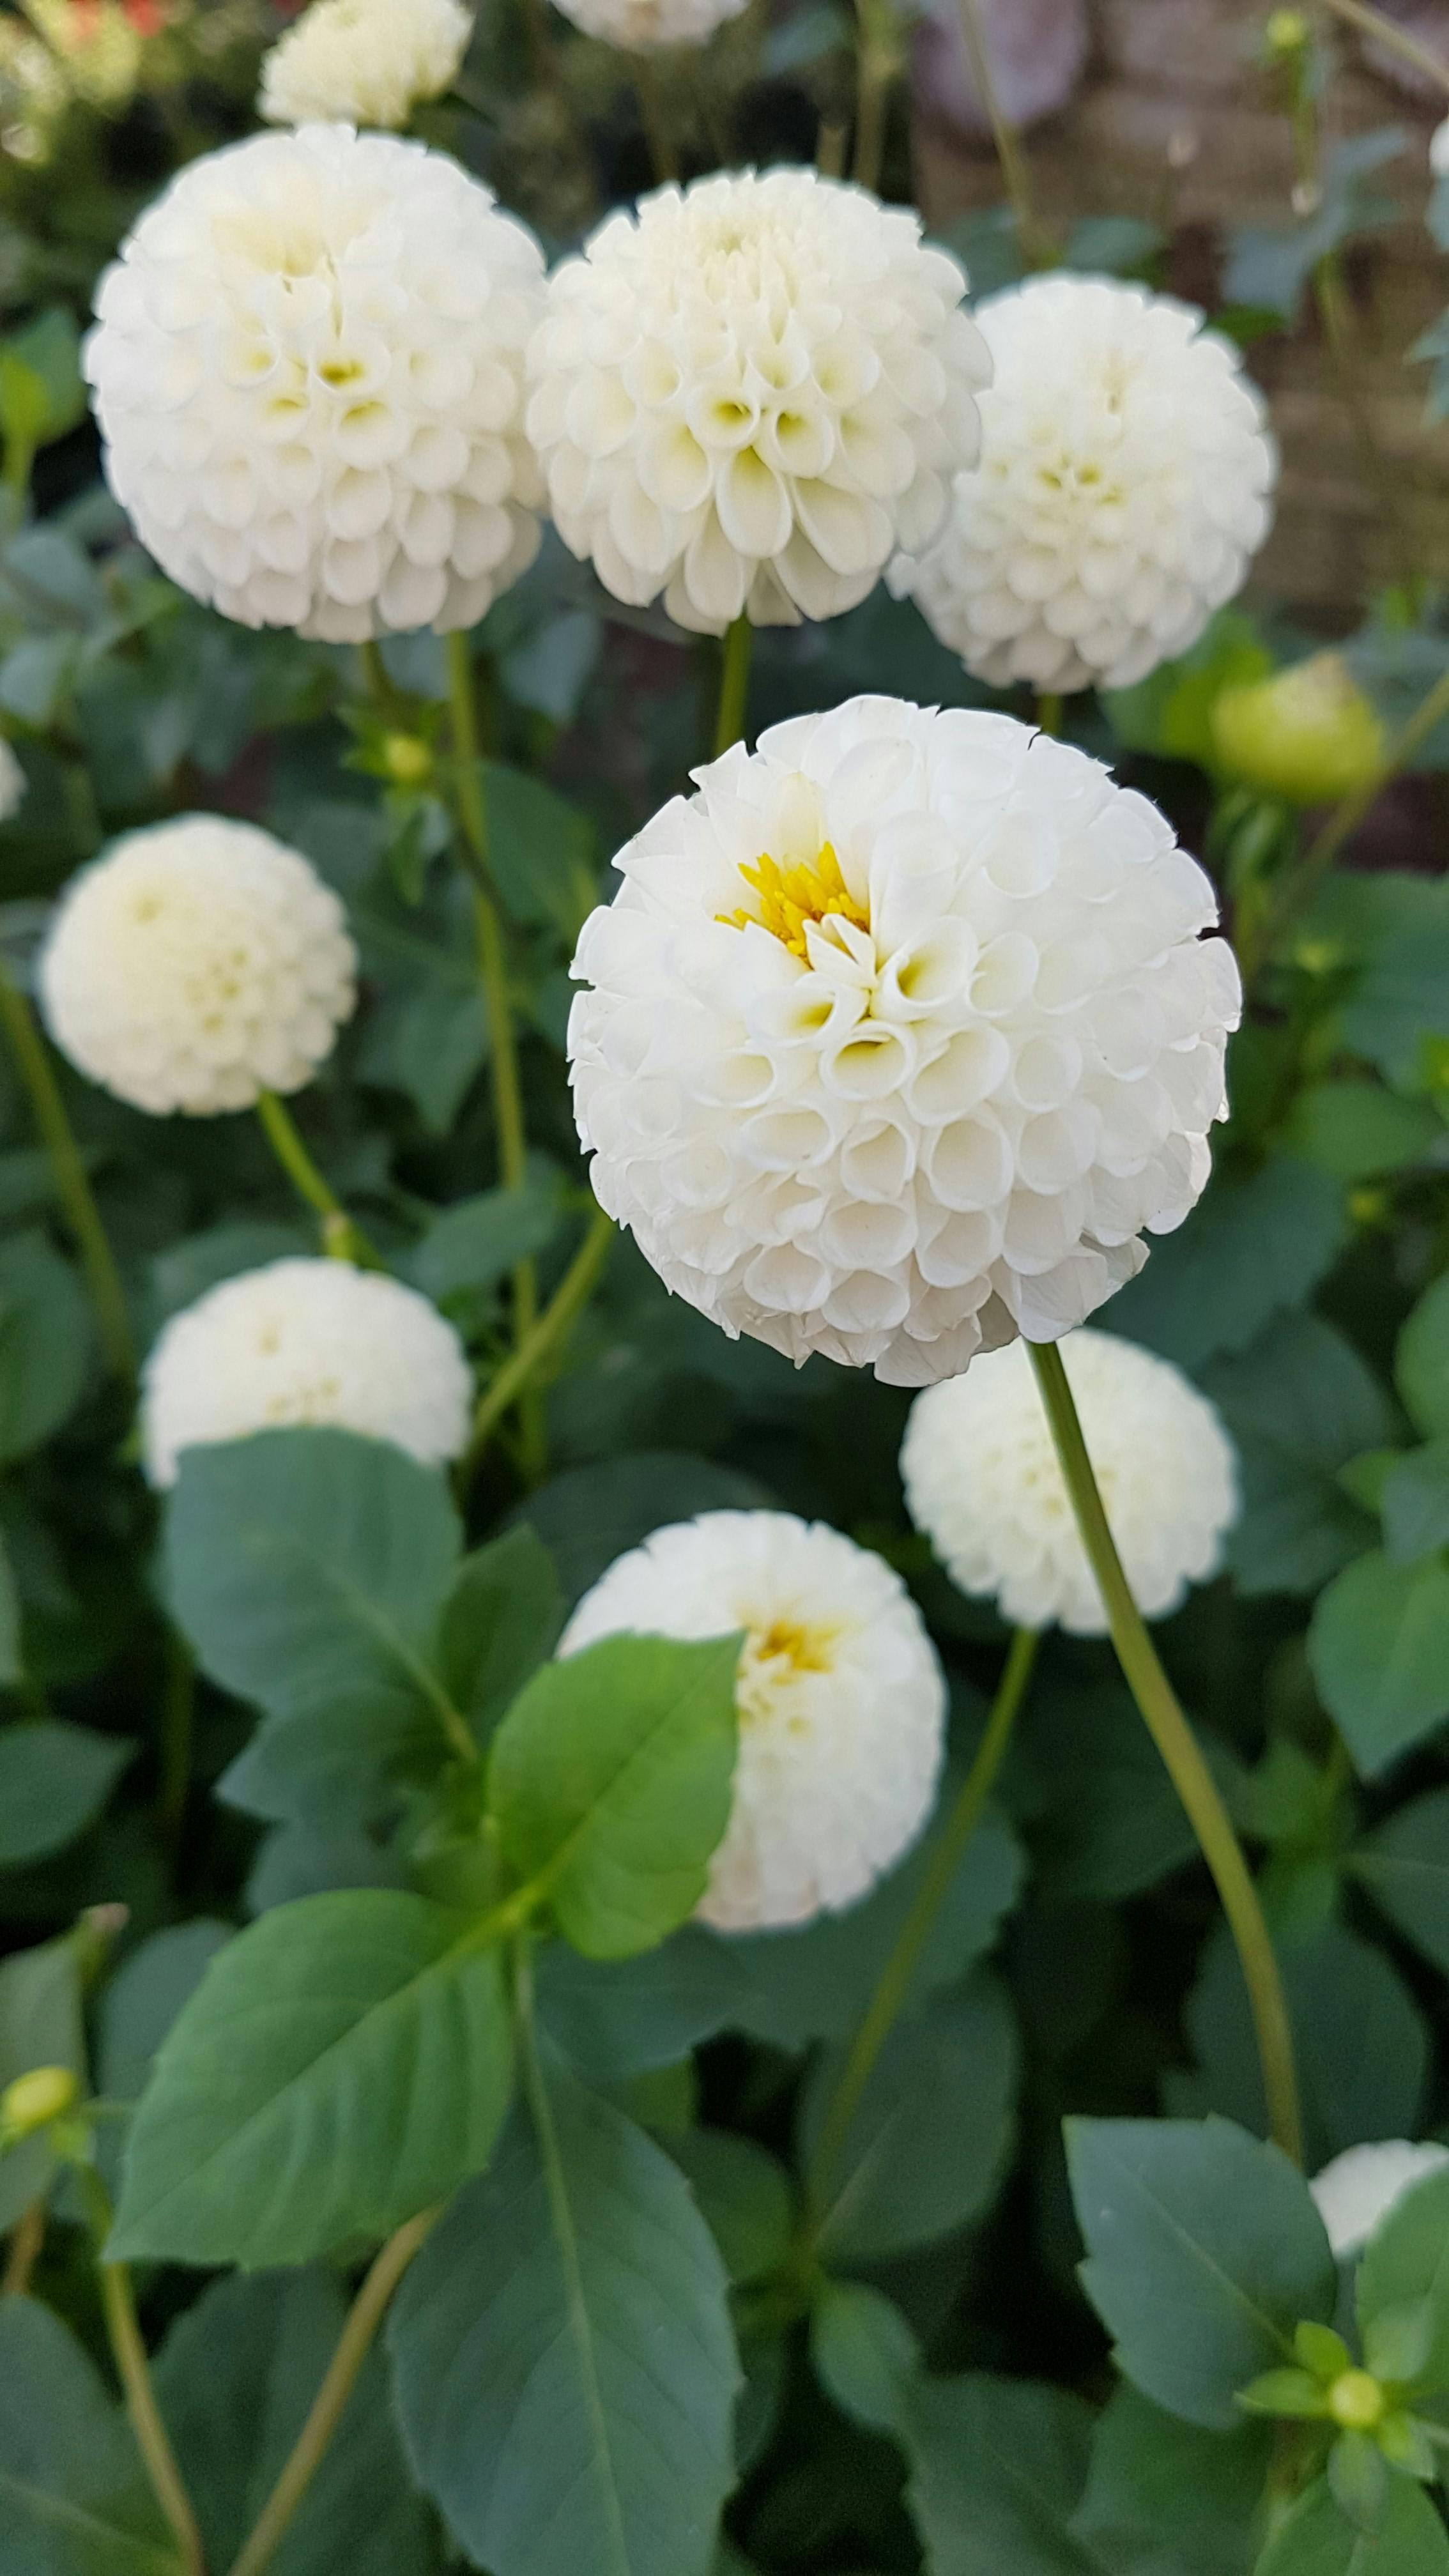 Image of Close-up of pom-pom flowers